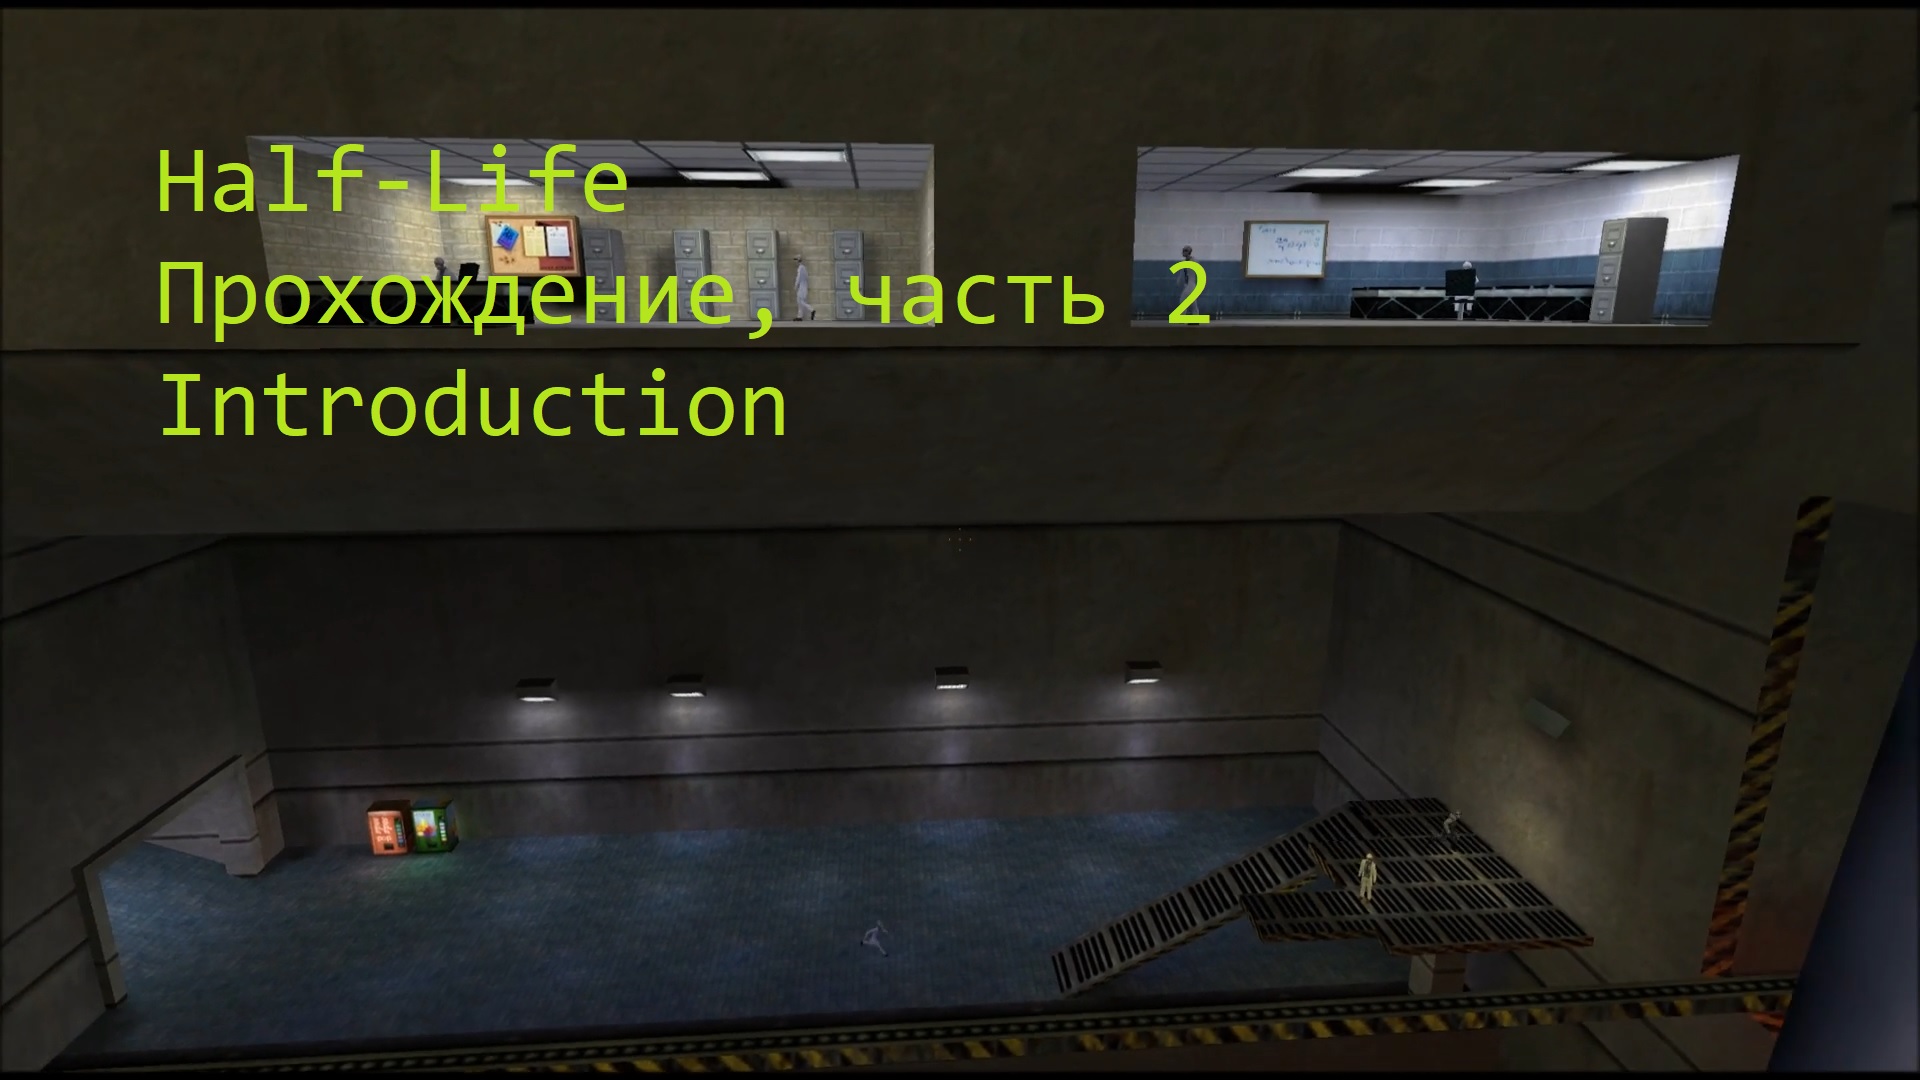 Half-Life, Прохождение, часть 2 - Introduction